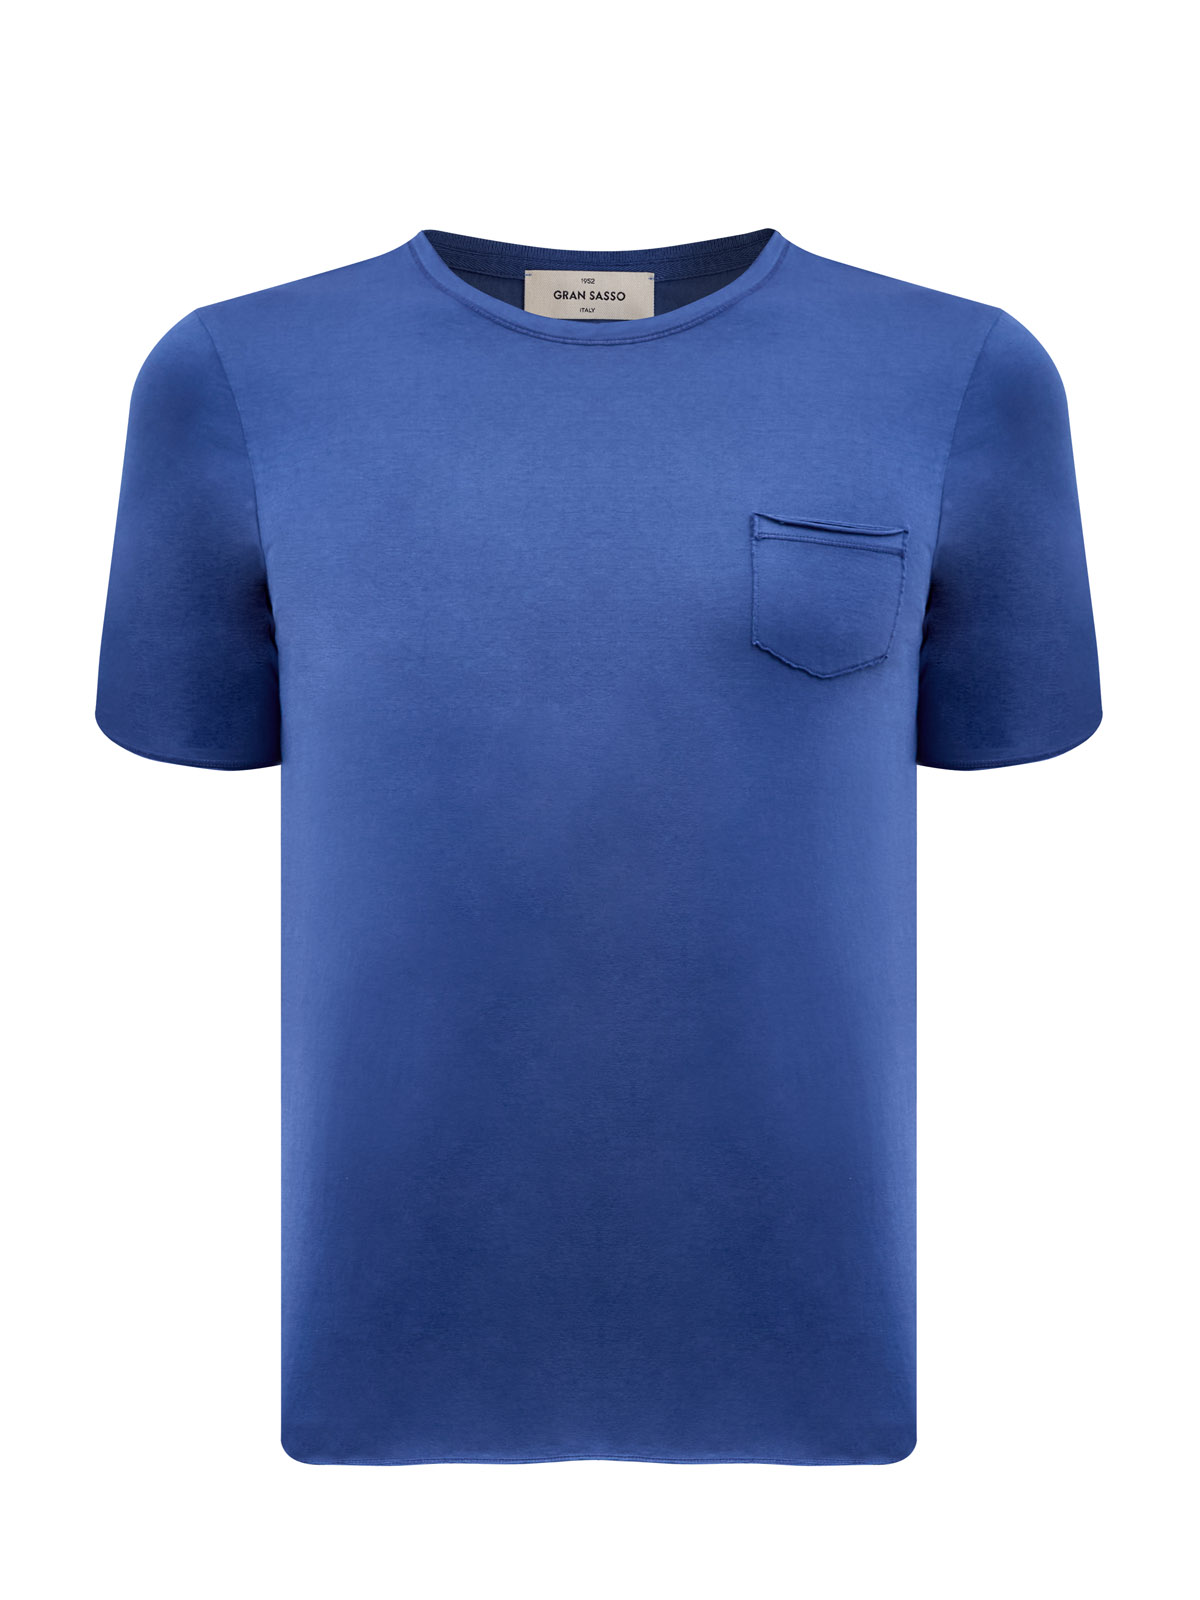 Хлопковая футболка из тонкого джерси с фирменным патчем GRAN SASSO, цвет синий, размер 50;52;54;56;58 - фото 1